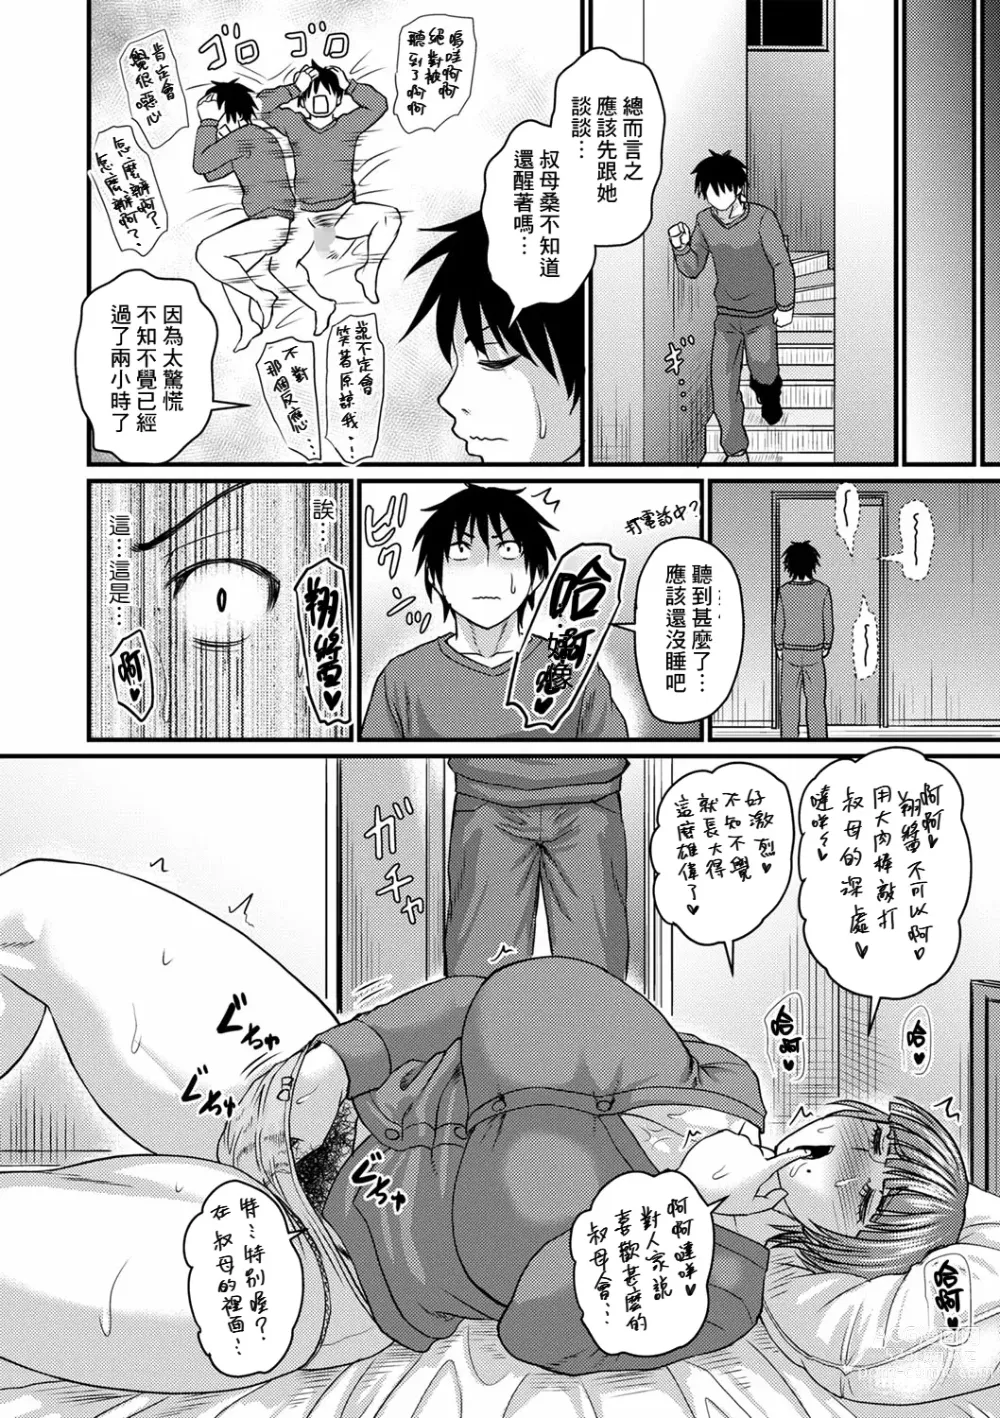 Page 6 of manga Obasan to Futarigurashi